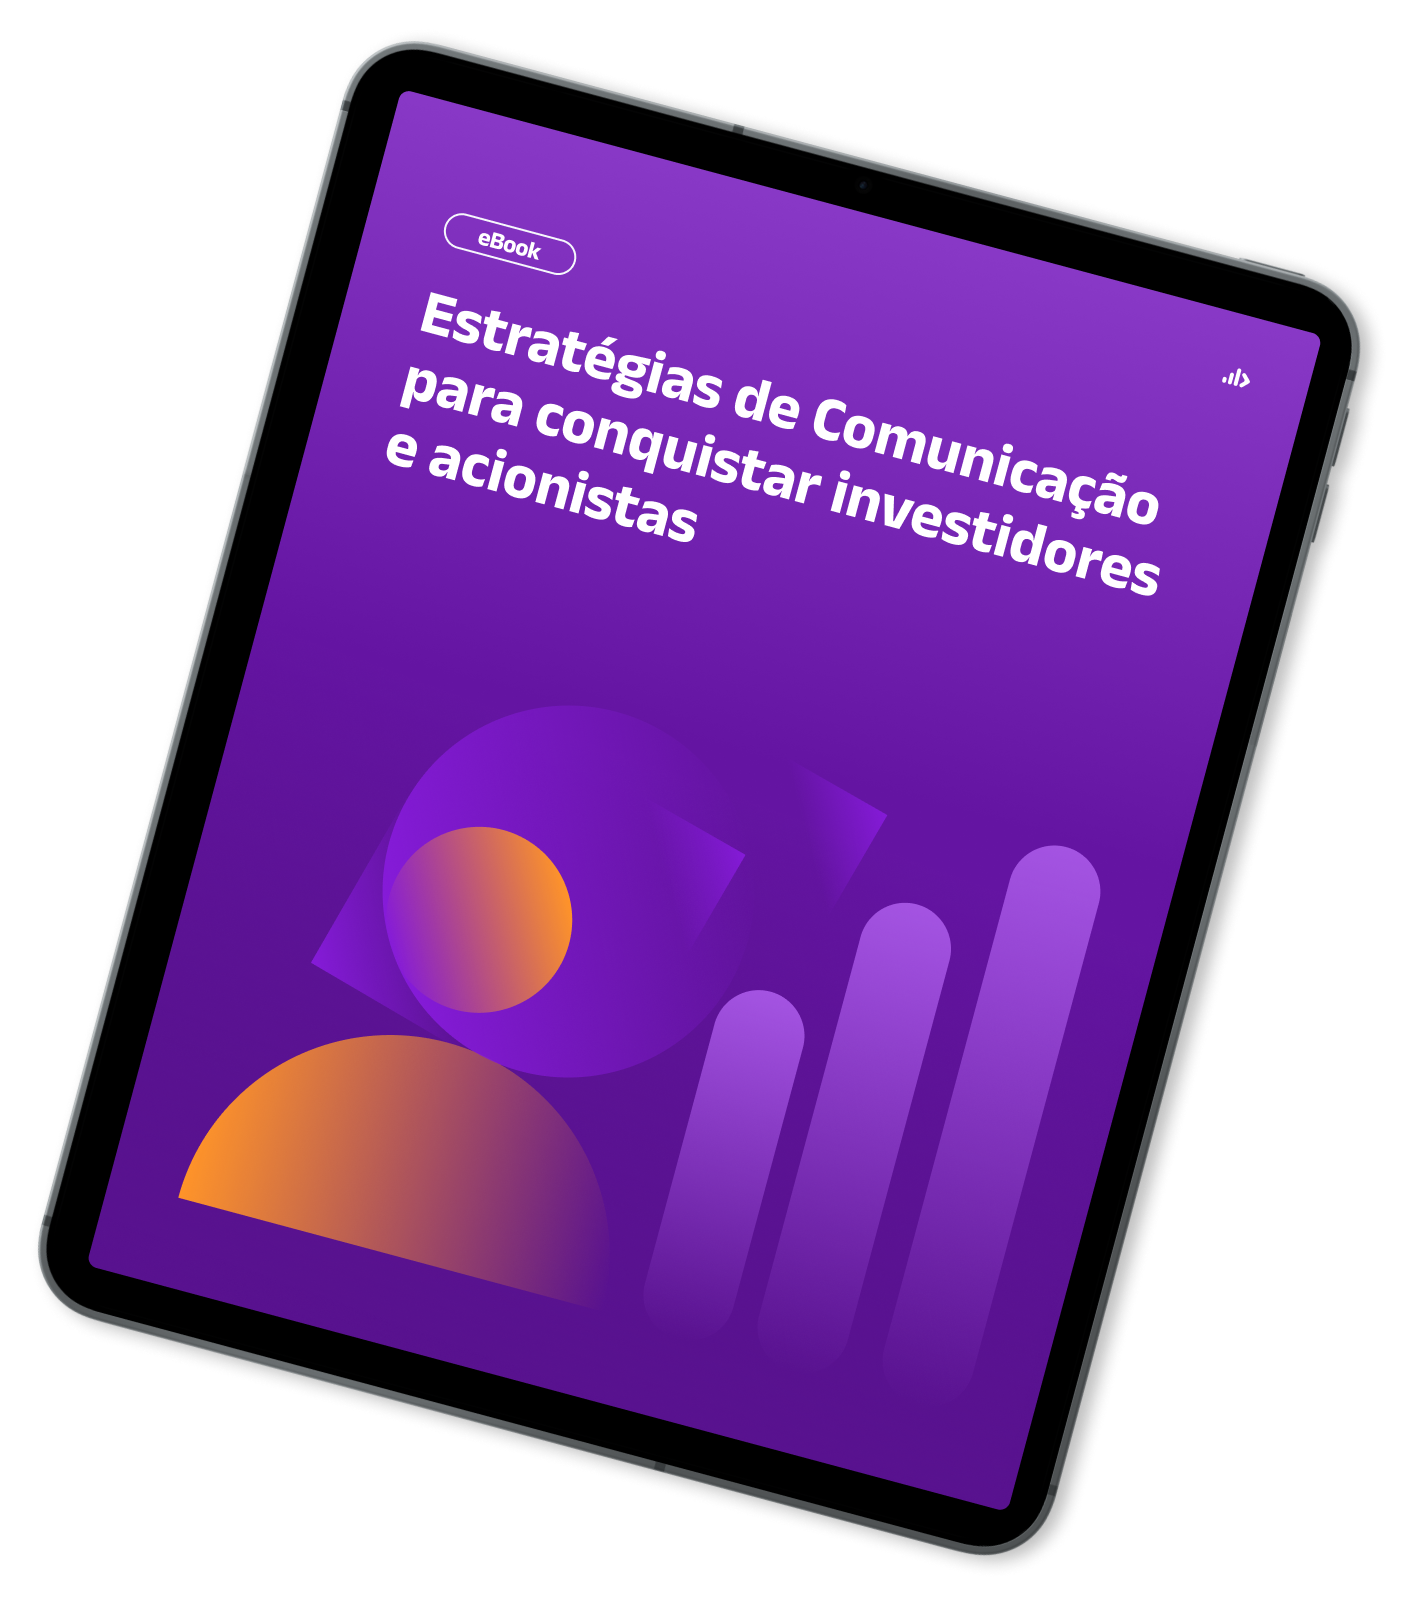 Mockup de Tablet com capa do Ebook - Estratégias de Comunicação para conquistar investidores  e acionistas